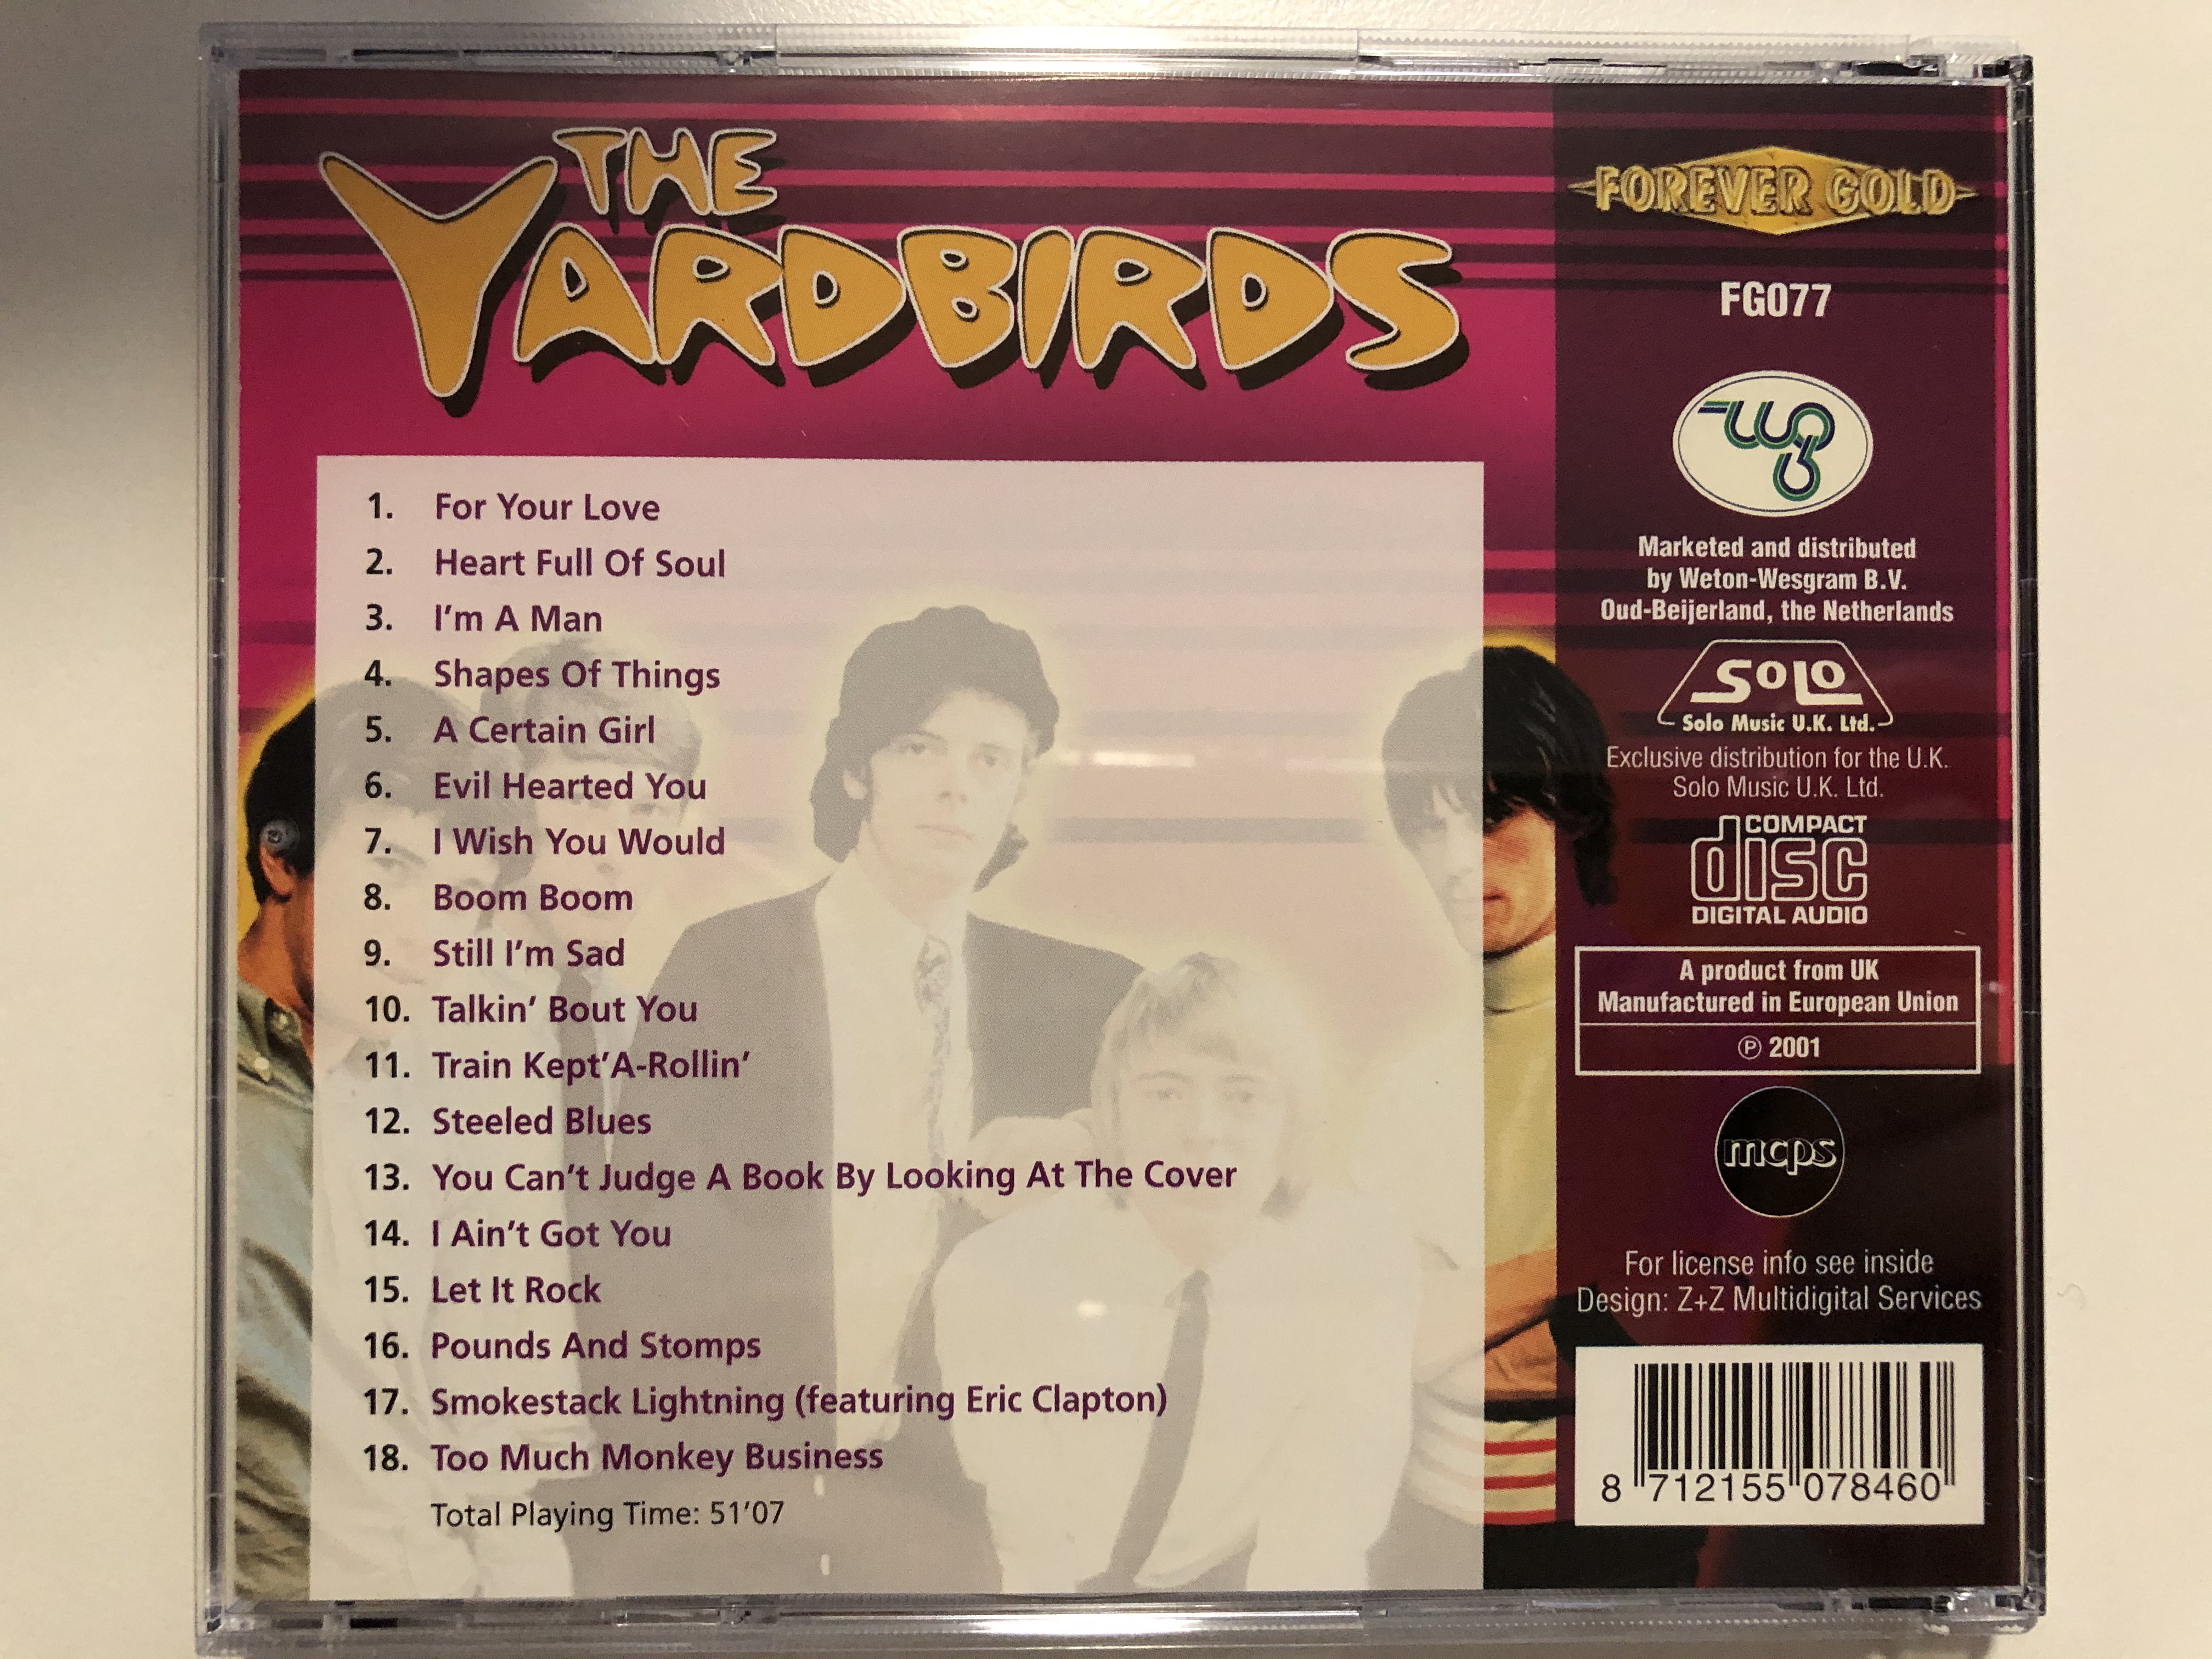 the-yardbirds-for-your-love-heart-full-of-soul-i-m-a-man-still-i-m-sad-forever-gold-audio-cd-2001-fg077-2-.jpg